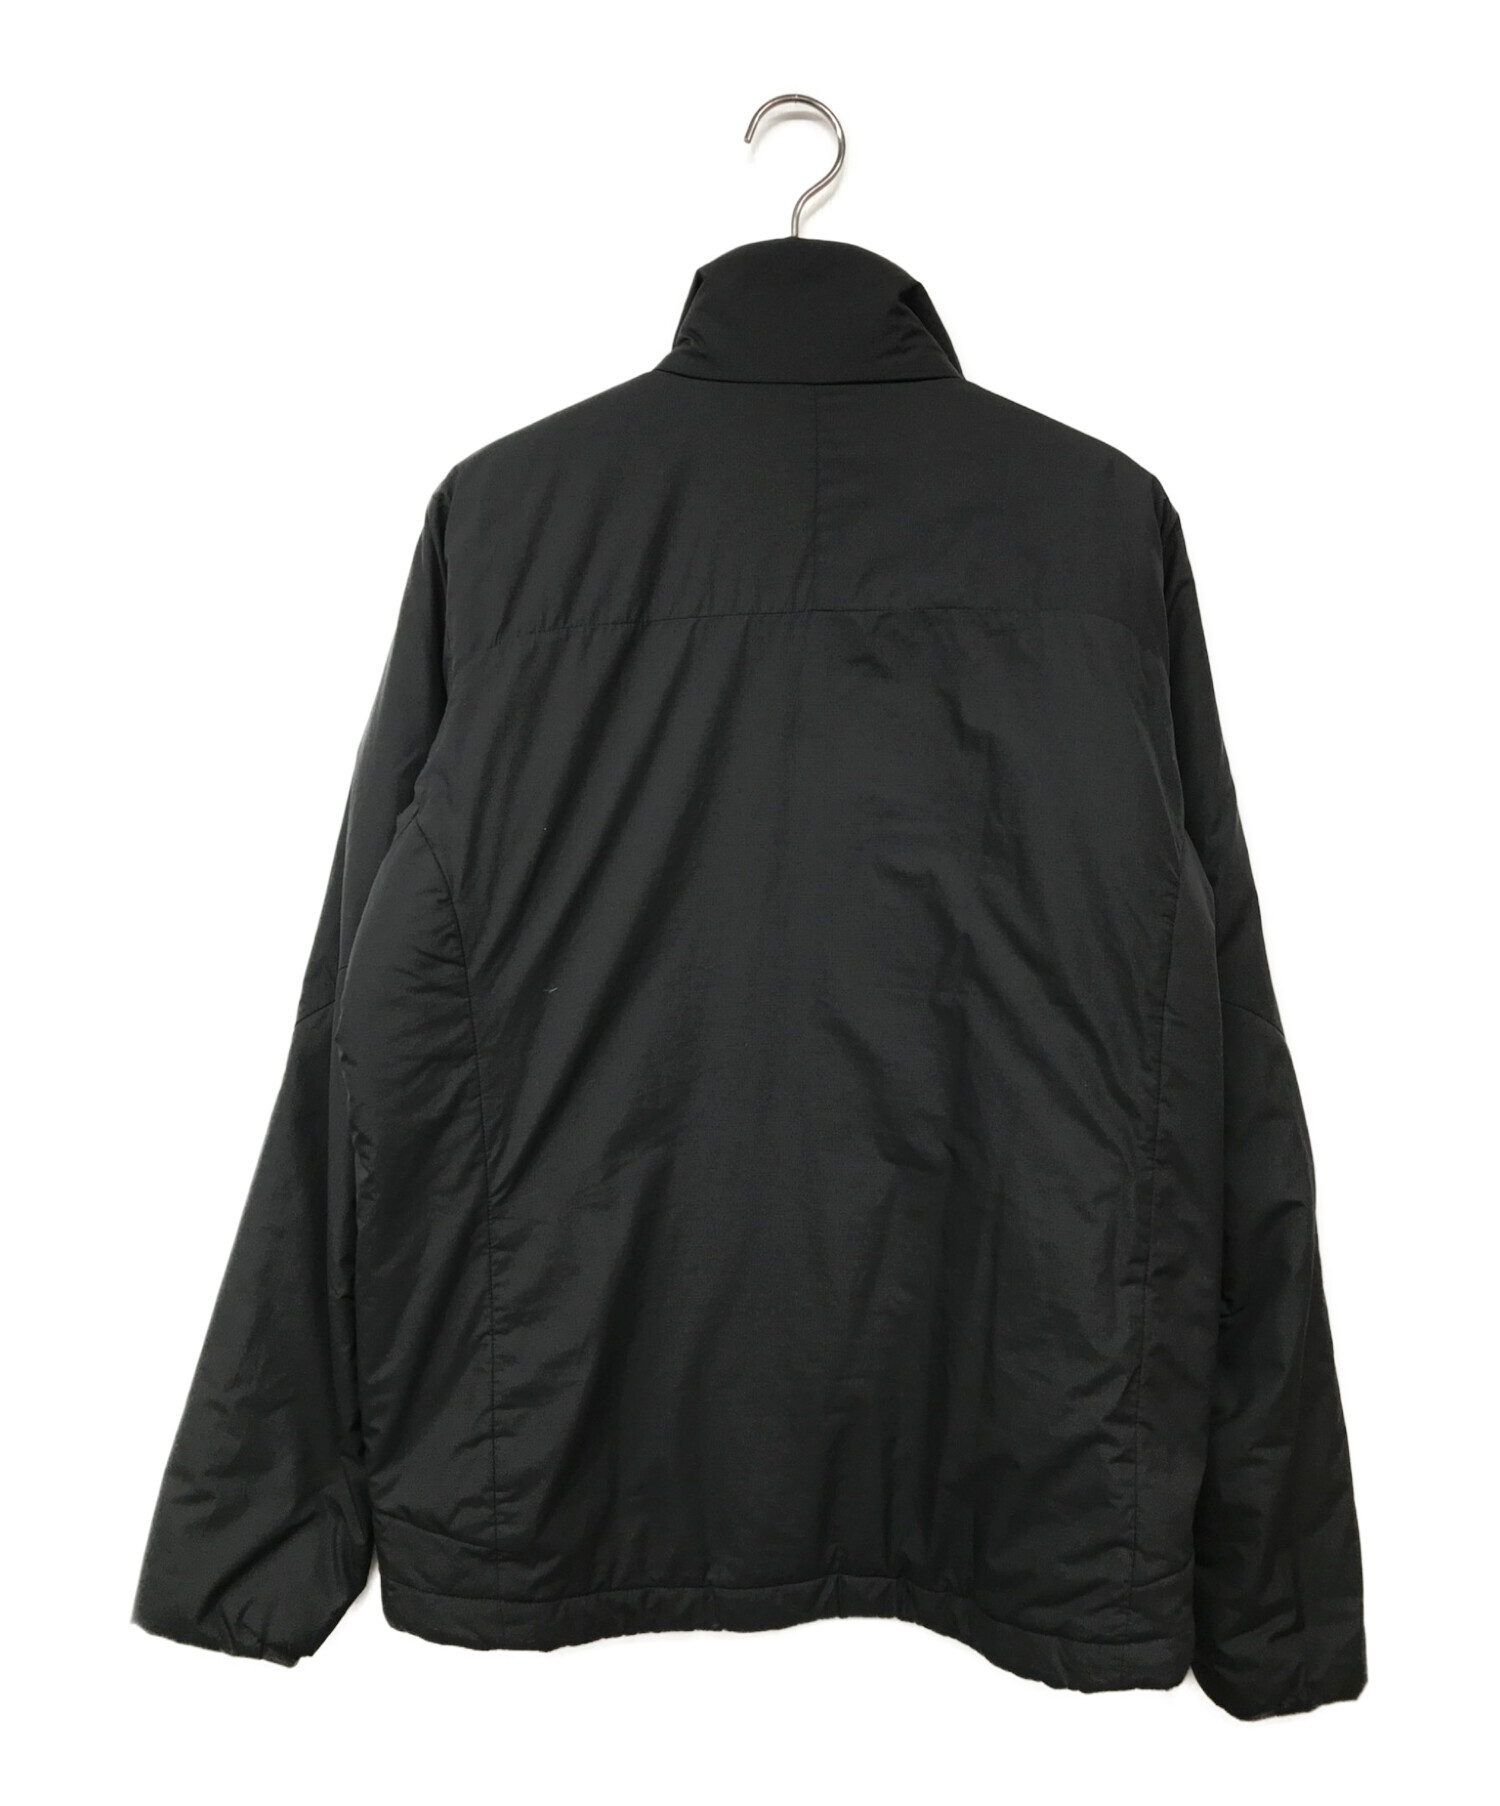 Patagonia (パタゴニア) Micro Puff Jacket/マイクロパフジャケット ブラック サイズ:XS